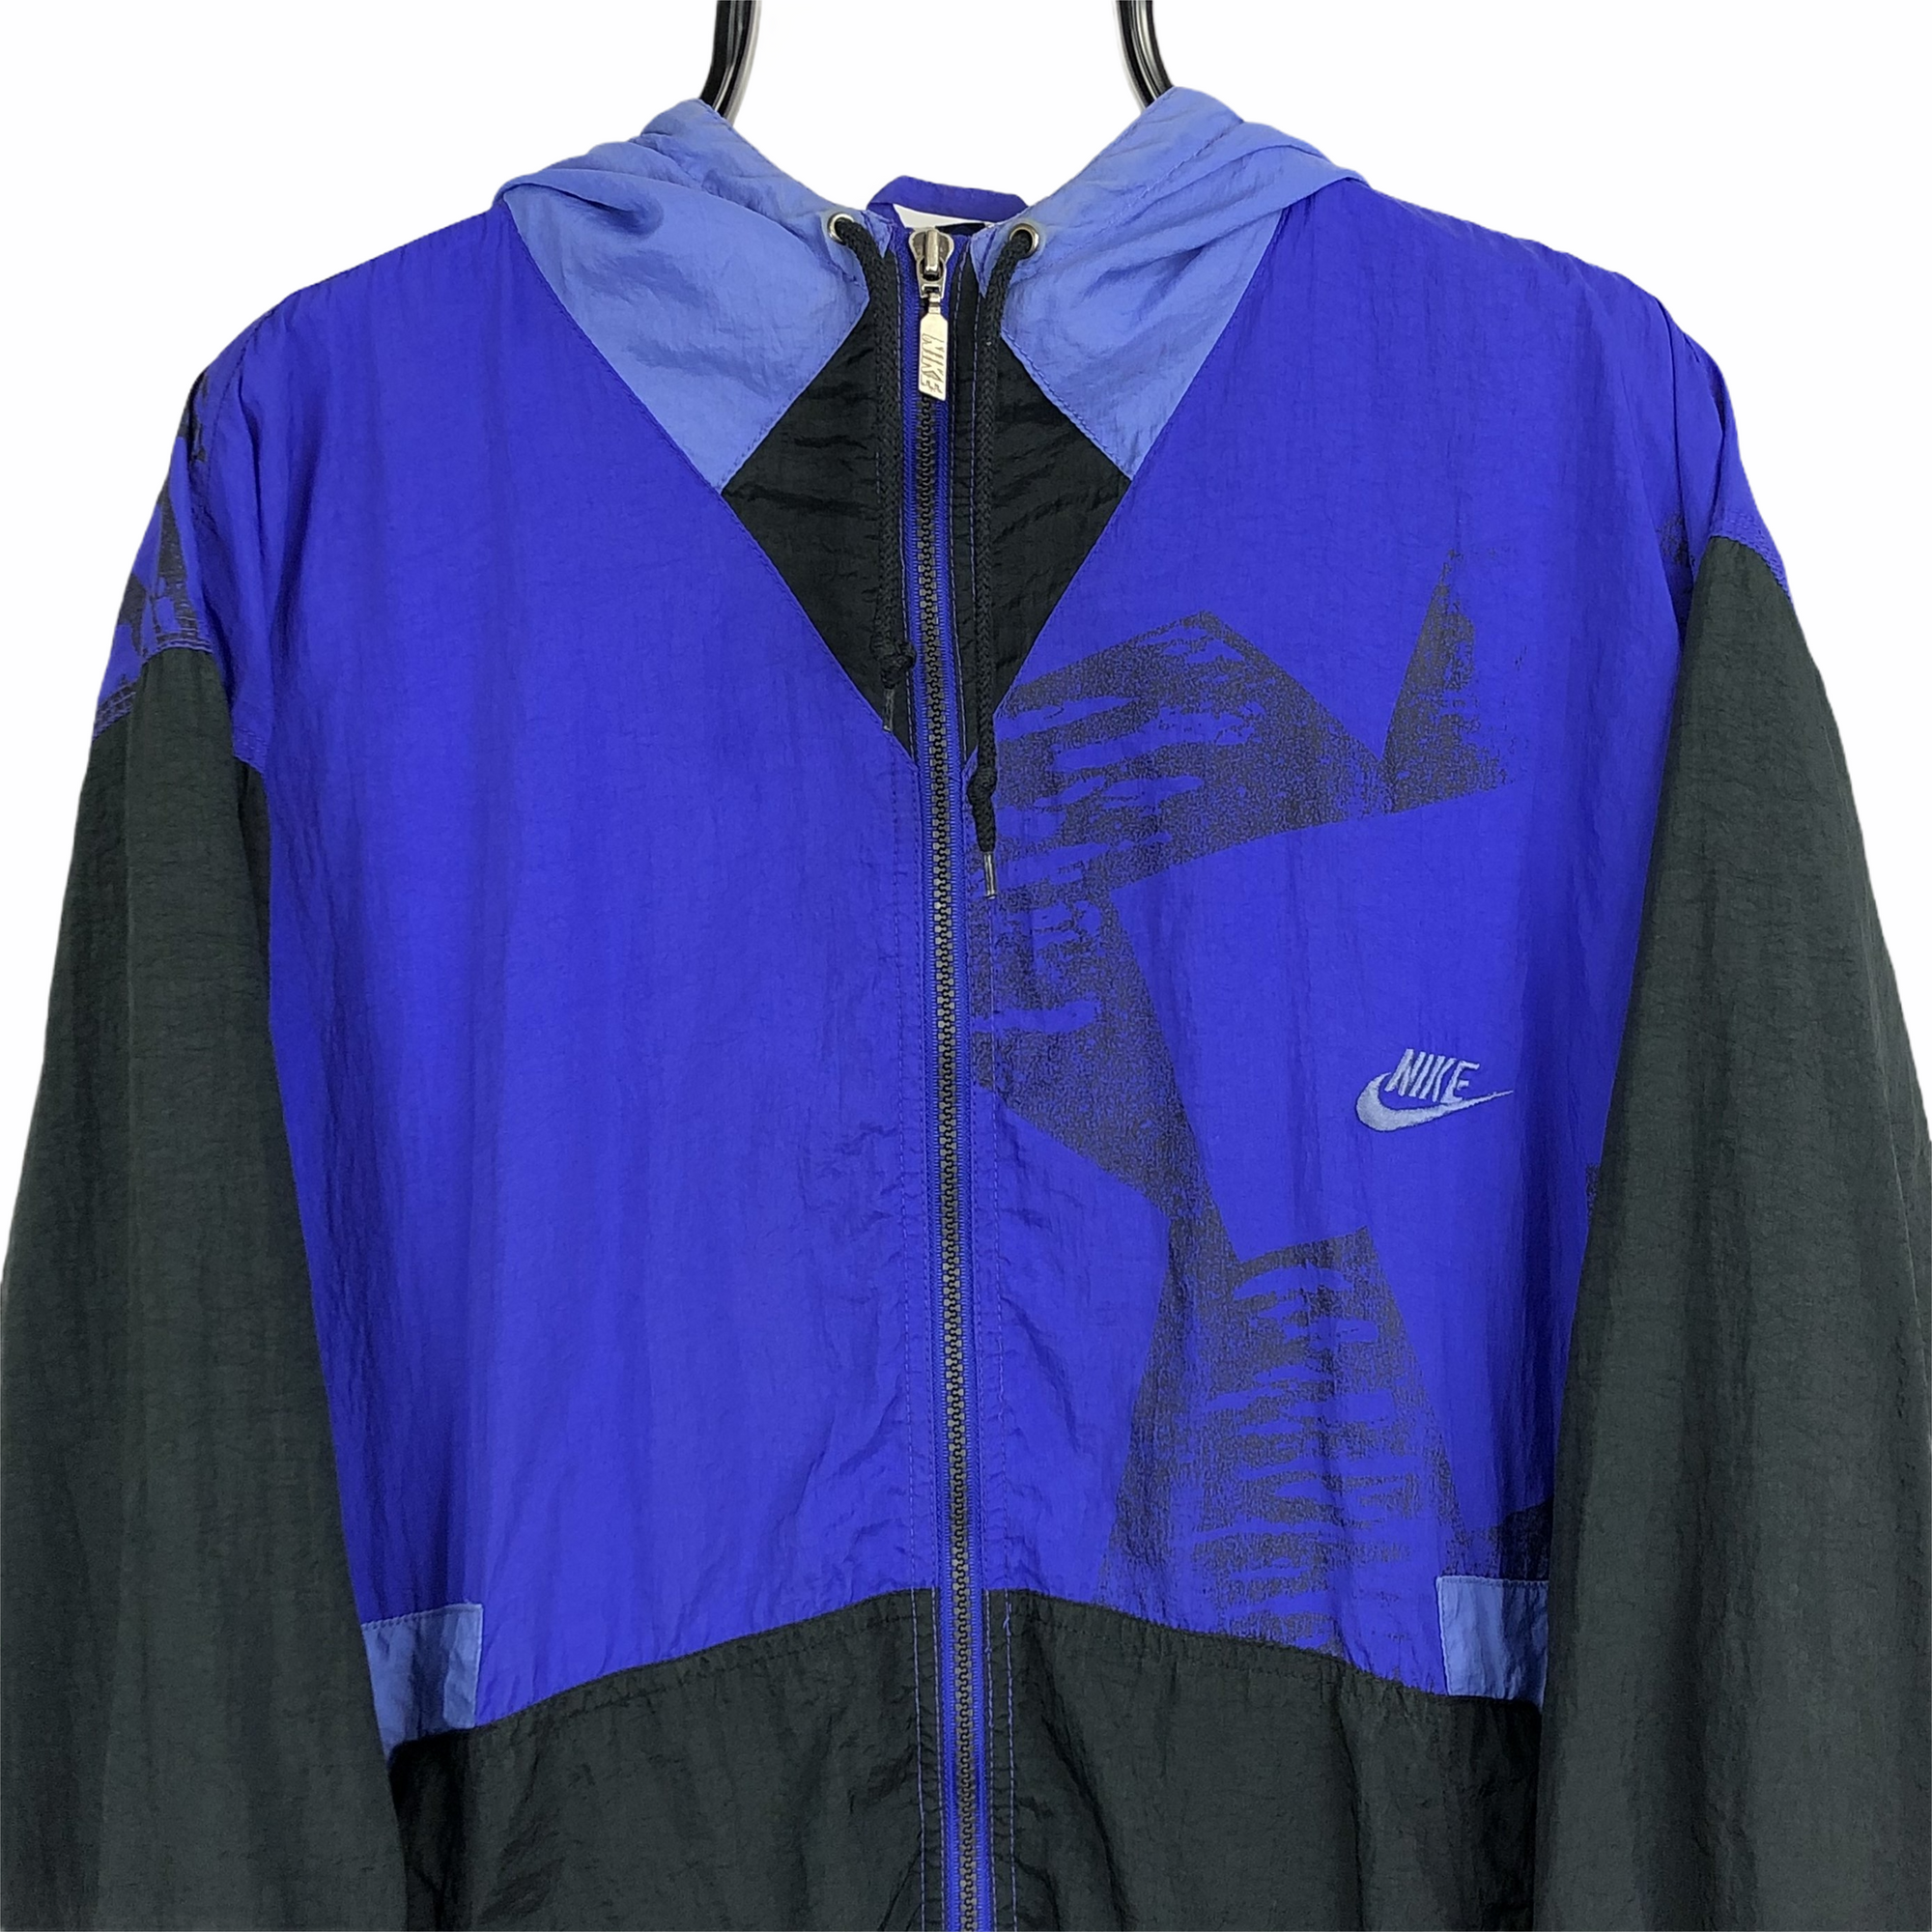 Vintage 90s Nike Track Jacket in Purple/Black - Men's XL/Women's XXL